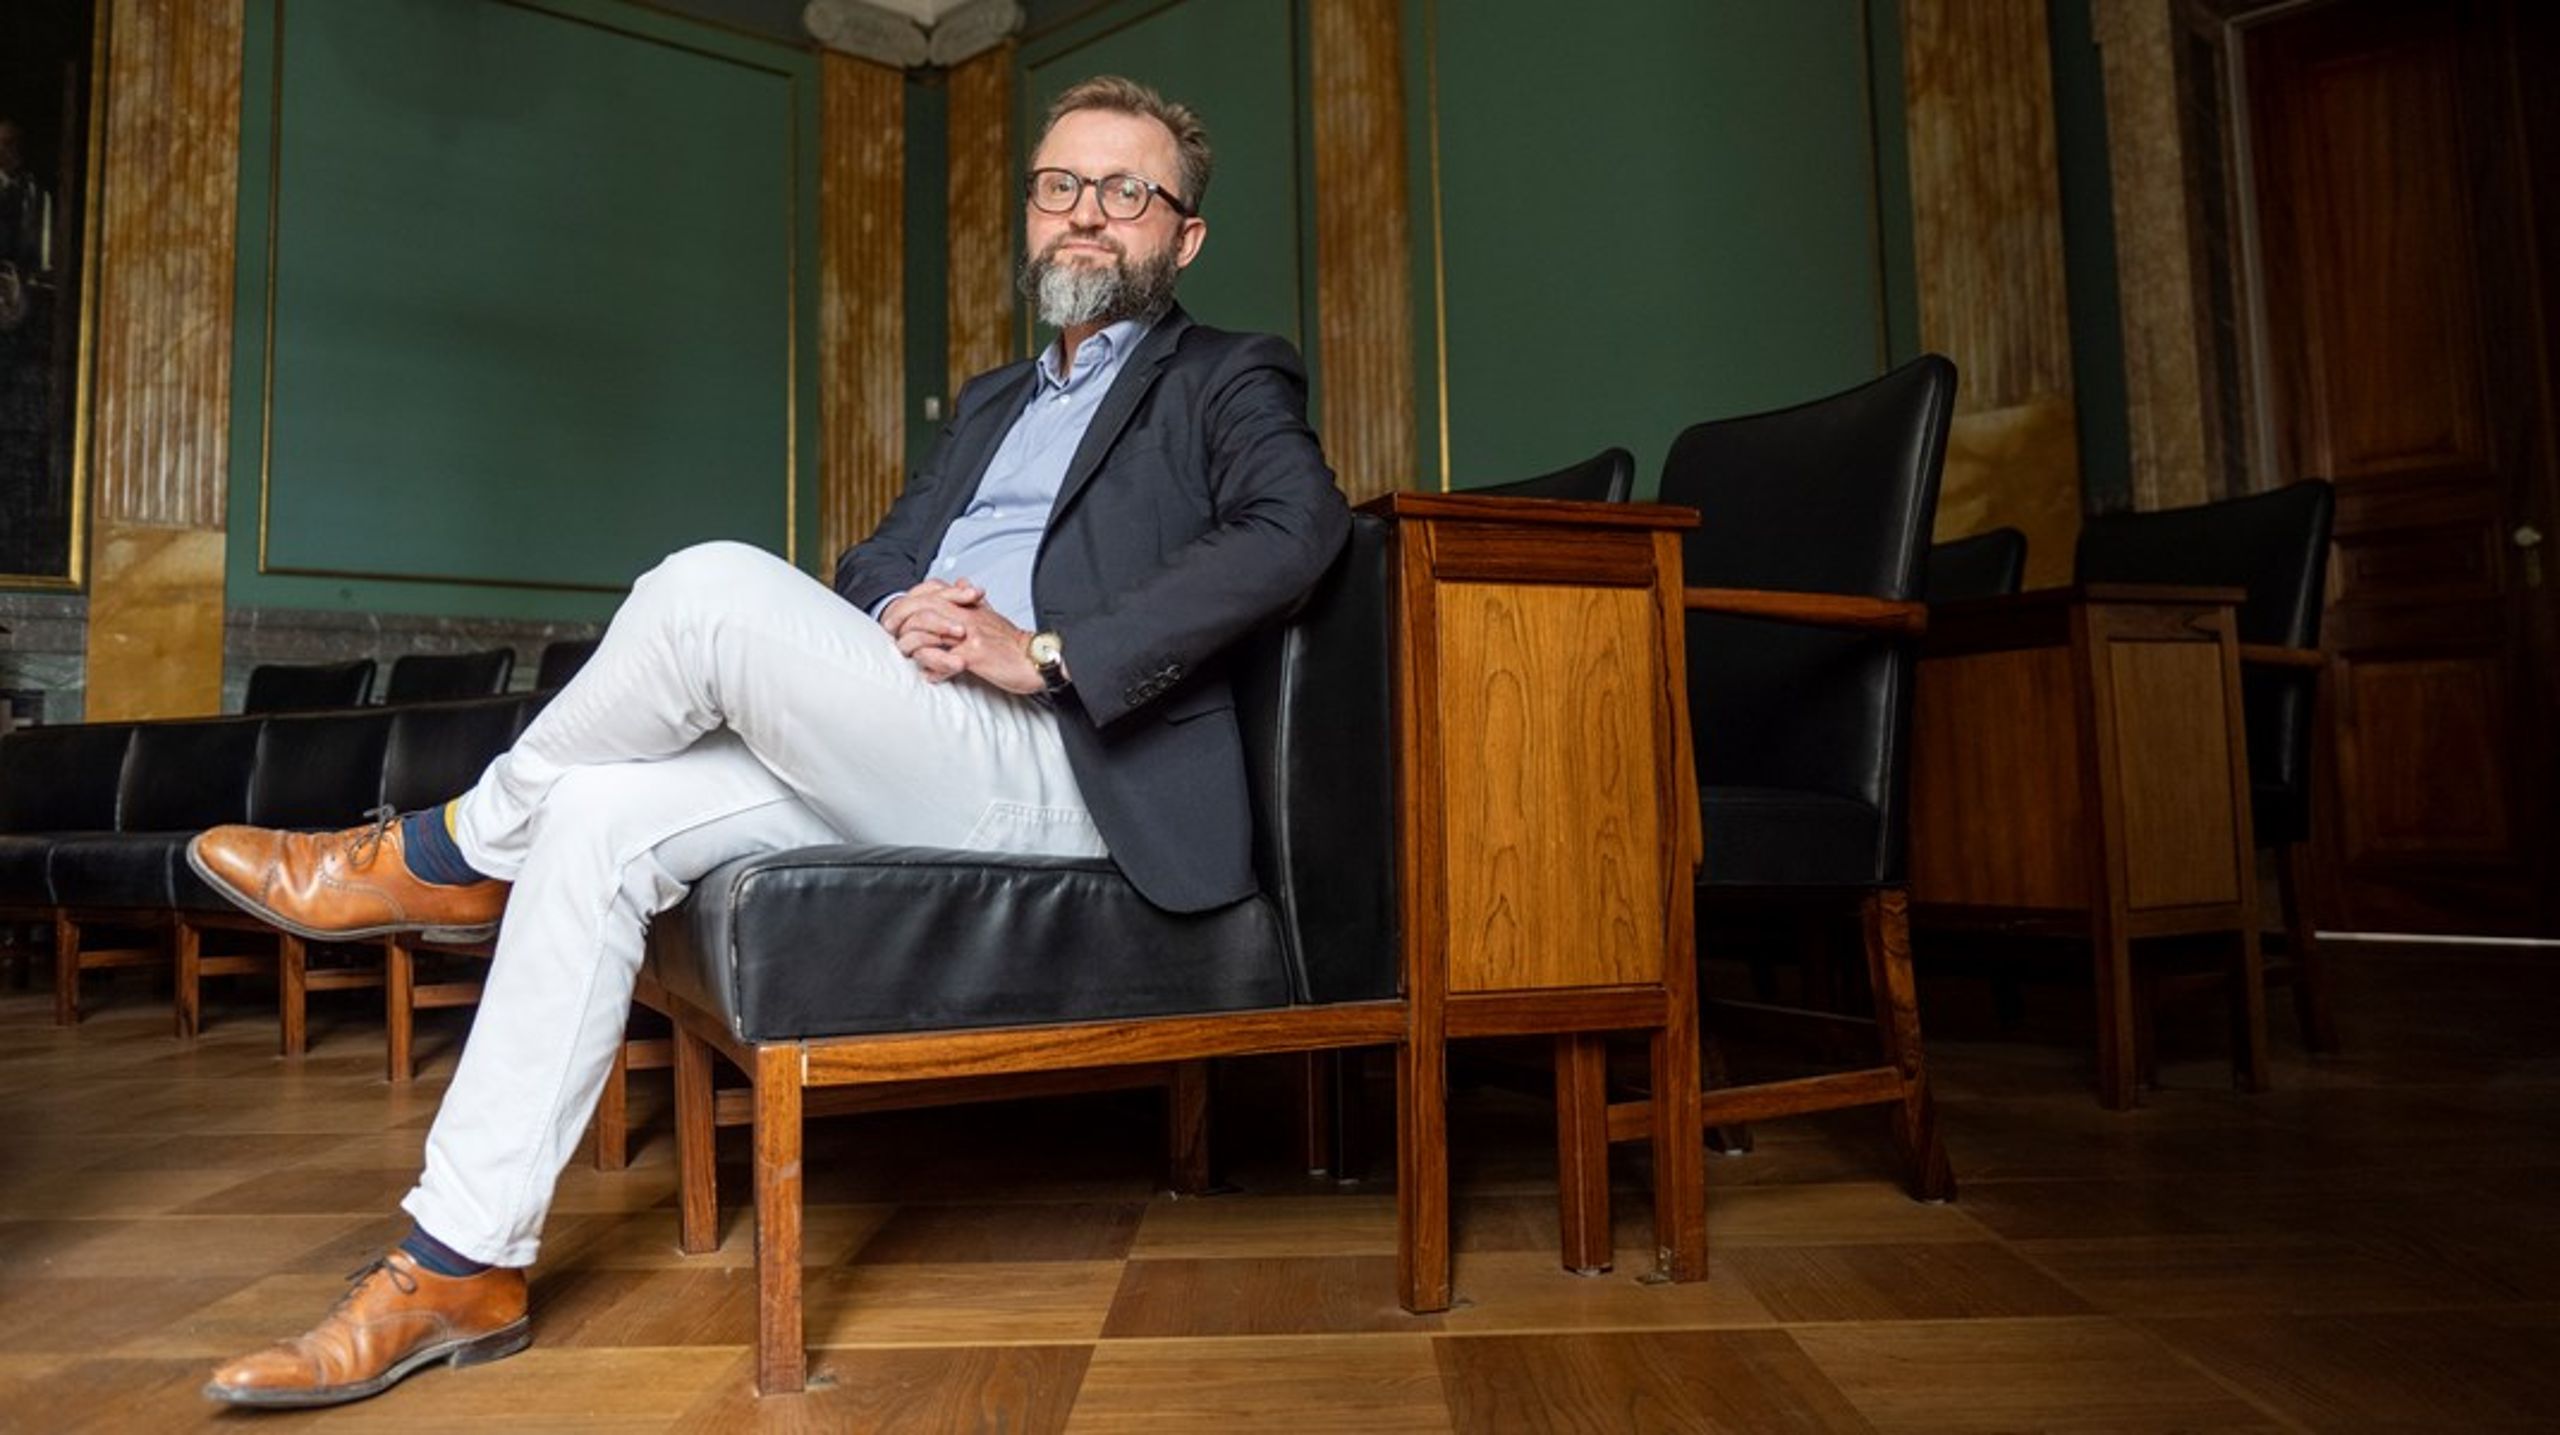 Lasse Horne Kjældgaard er den første direktør i Carlsbergfondets lange historie. Han blev ansat på baggrund af en histoisk fornyelse af fondets organisation, som blandt andet skal&nbsp;sikre mere lige vilkår for de mange forskere,&nbsp;som bejler til fondens bevillinger.